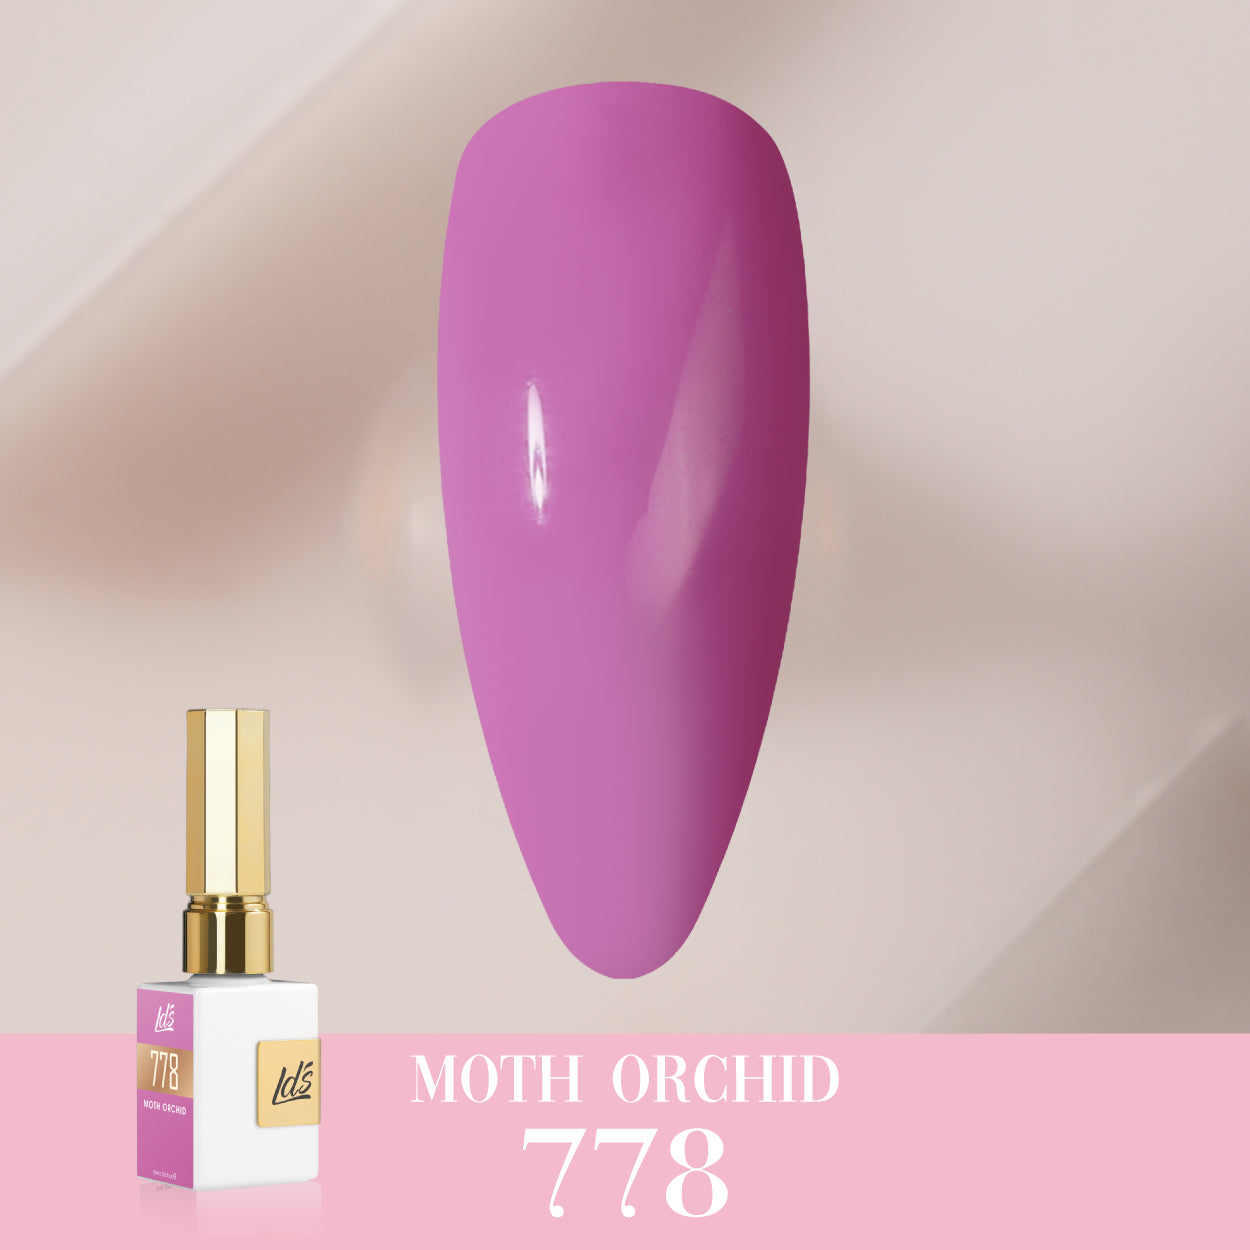 LDS Color Craze Collection - 778 Moth Orchid - Gel Polish 0.5oz